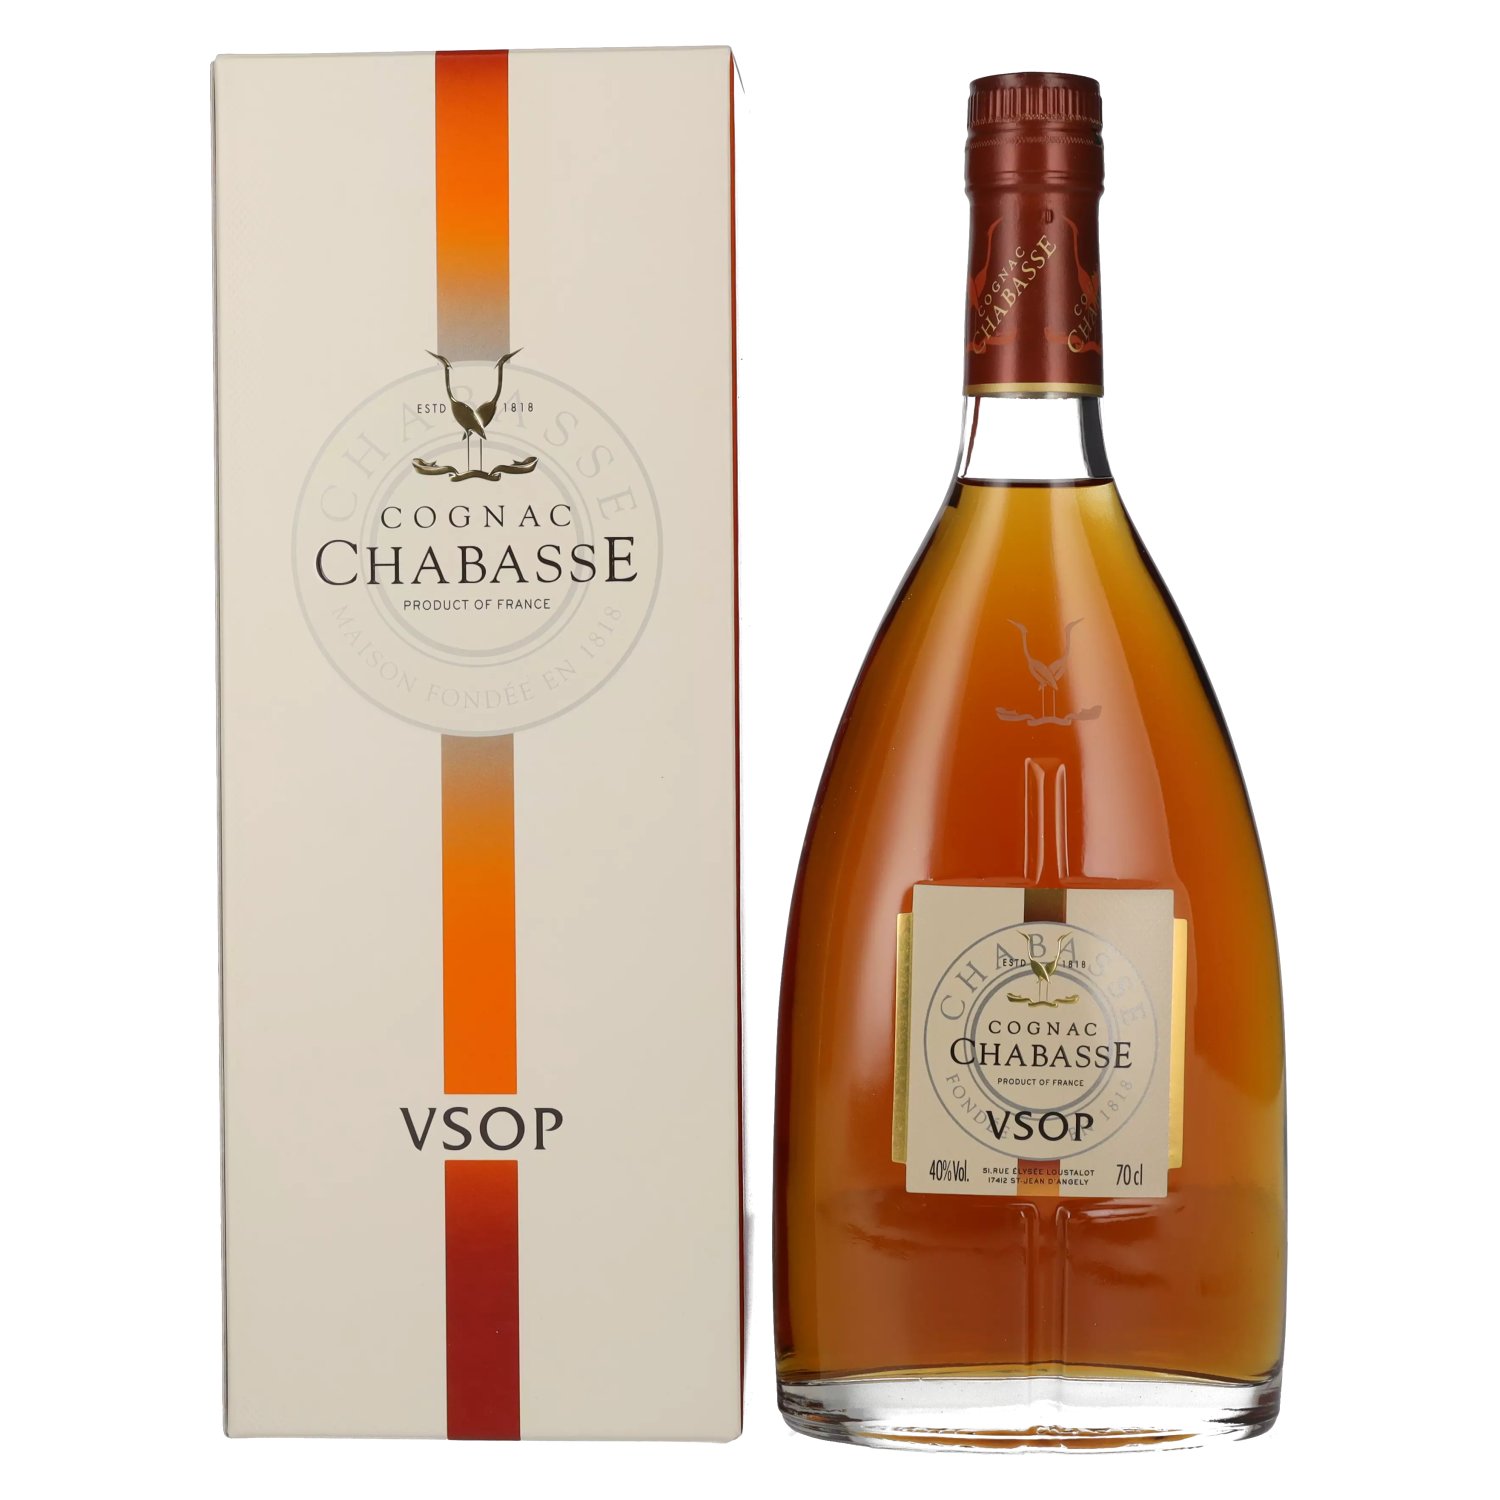 Chabasse VSOP 40% in Cognac Vol. 0,7l Geschenkbox